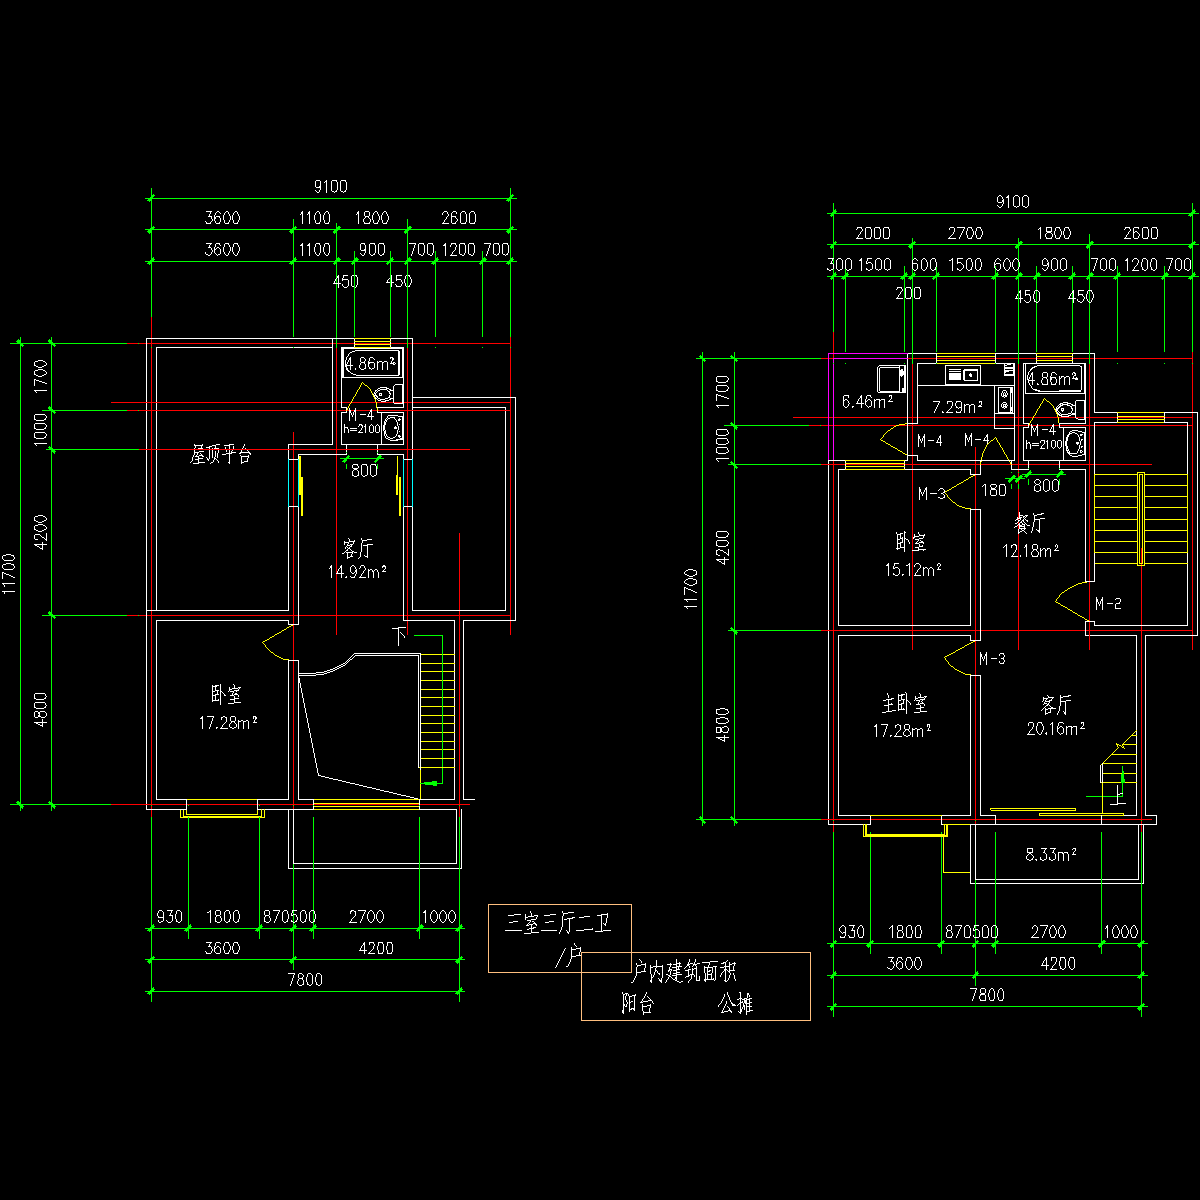 板式多层一梯二户三室三厅二卫有跃层户型CAD图纸(135/135)